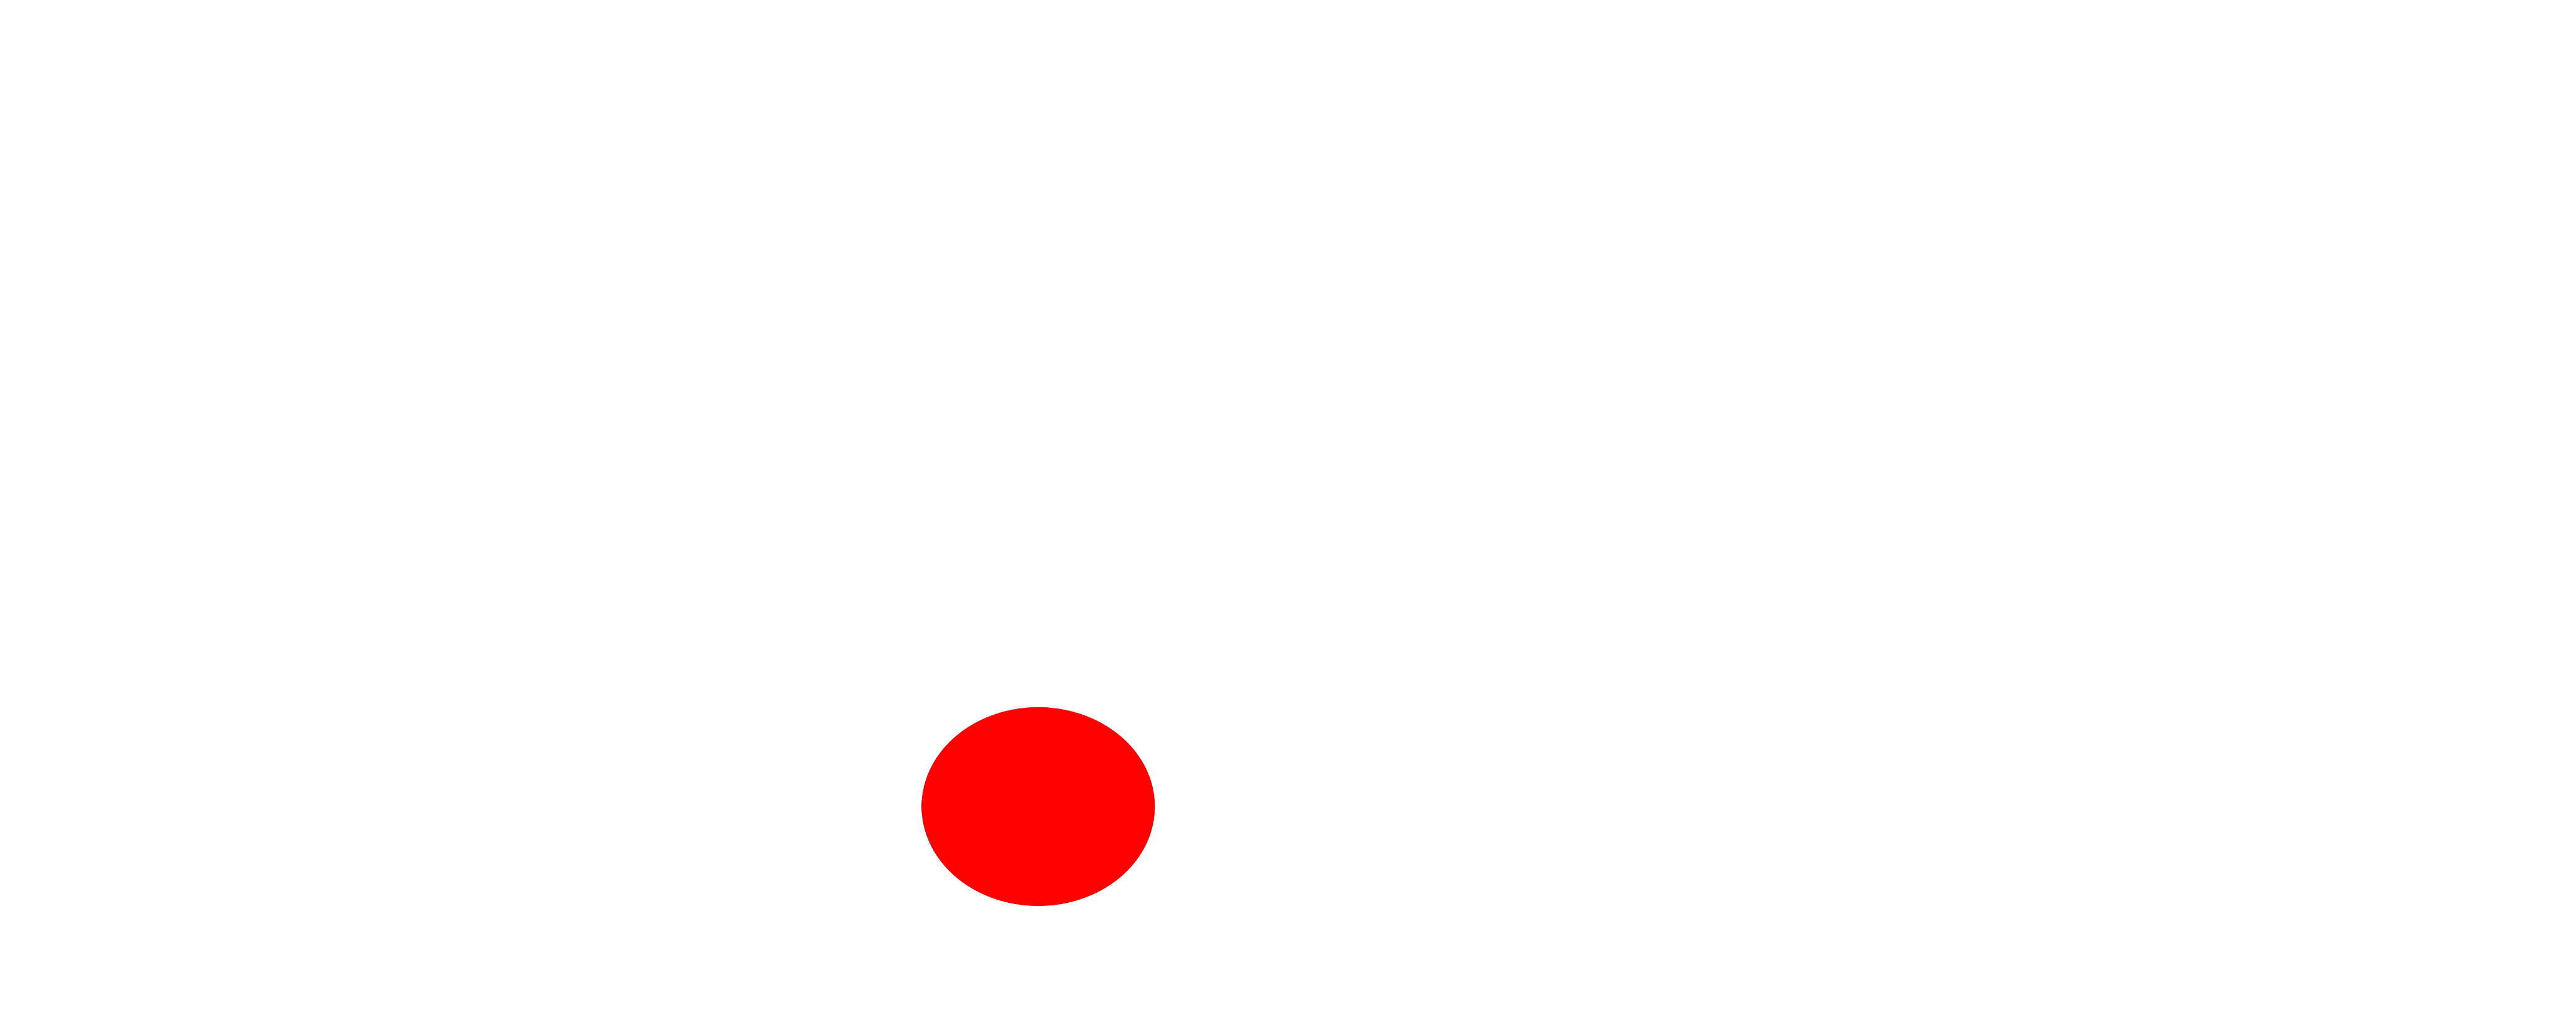 Mantica